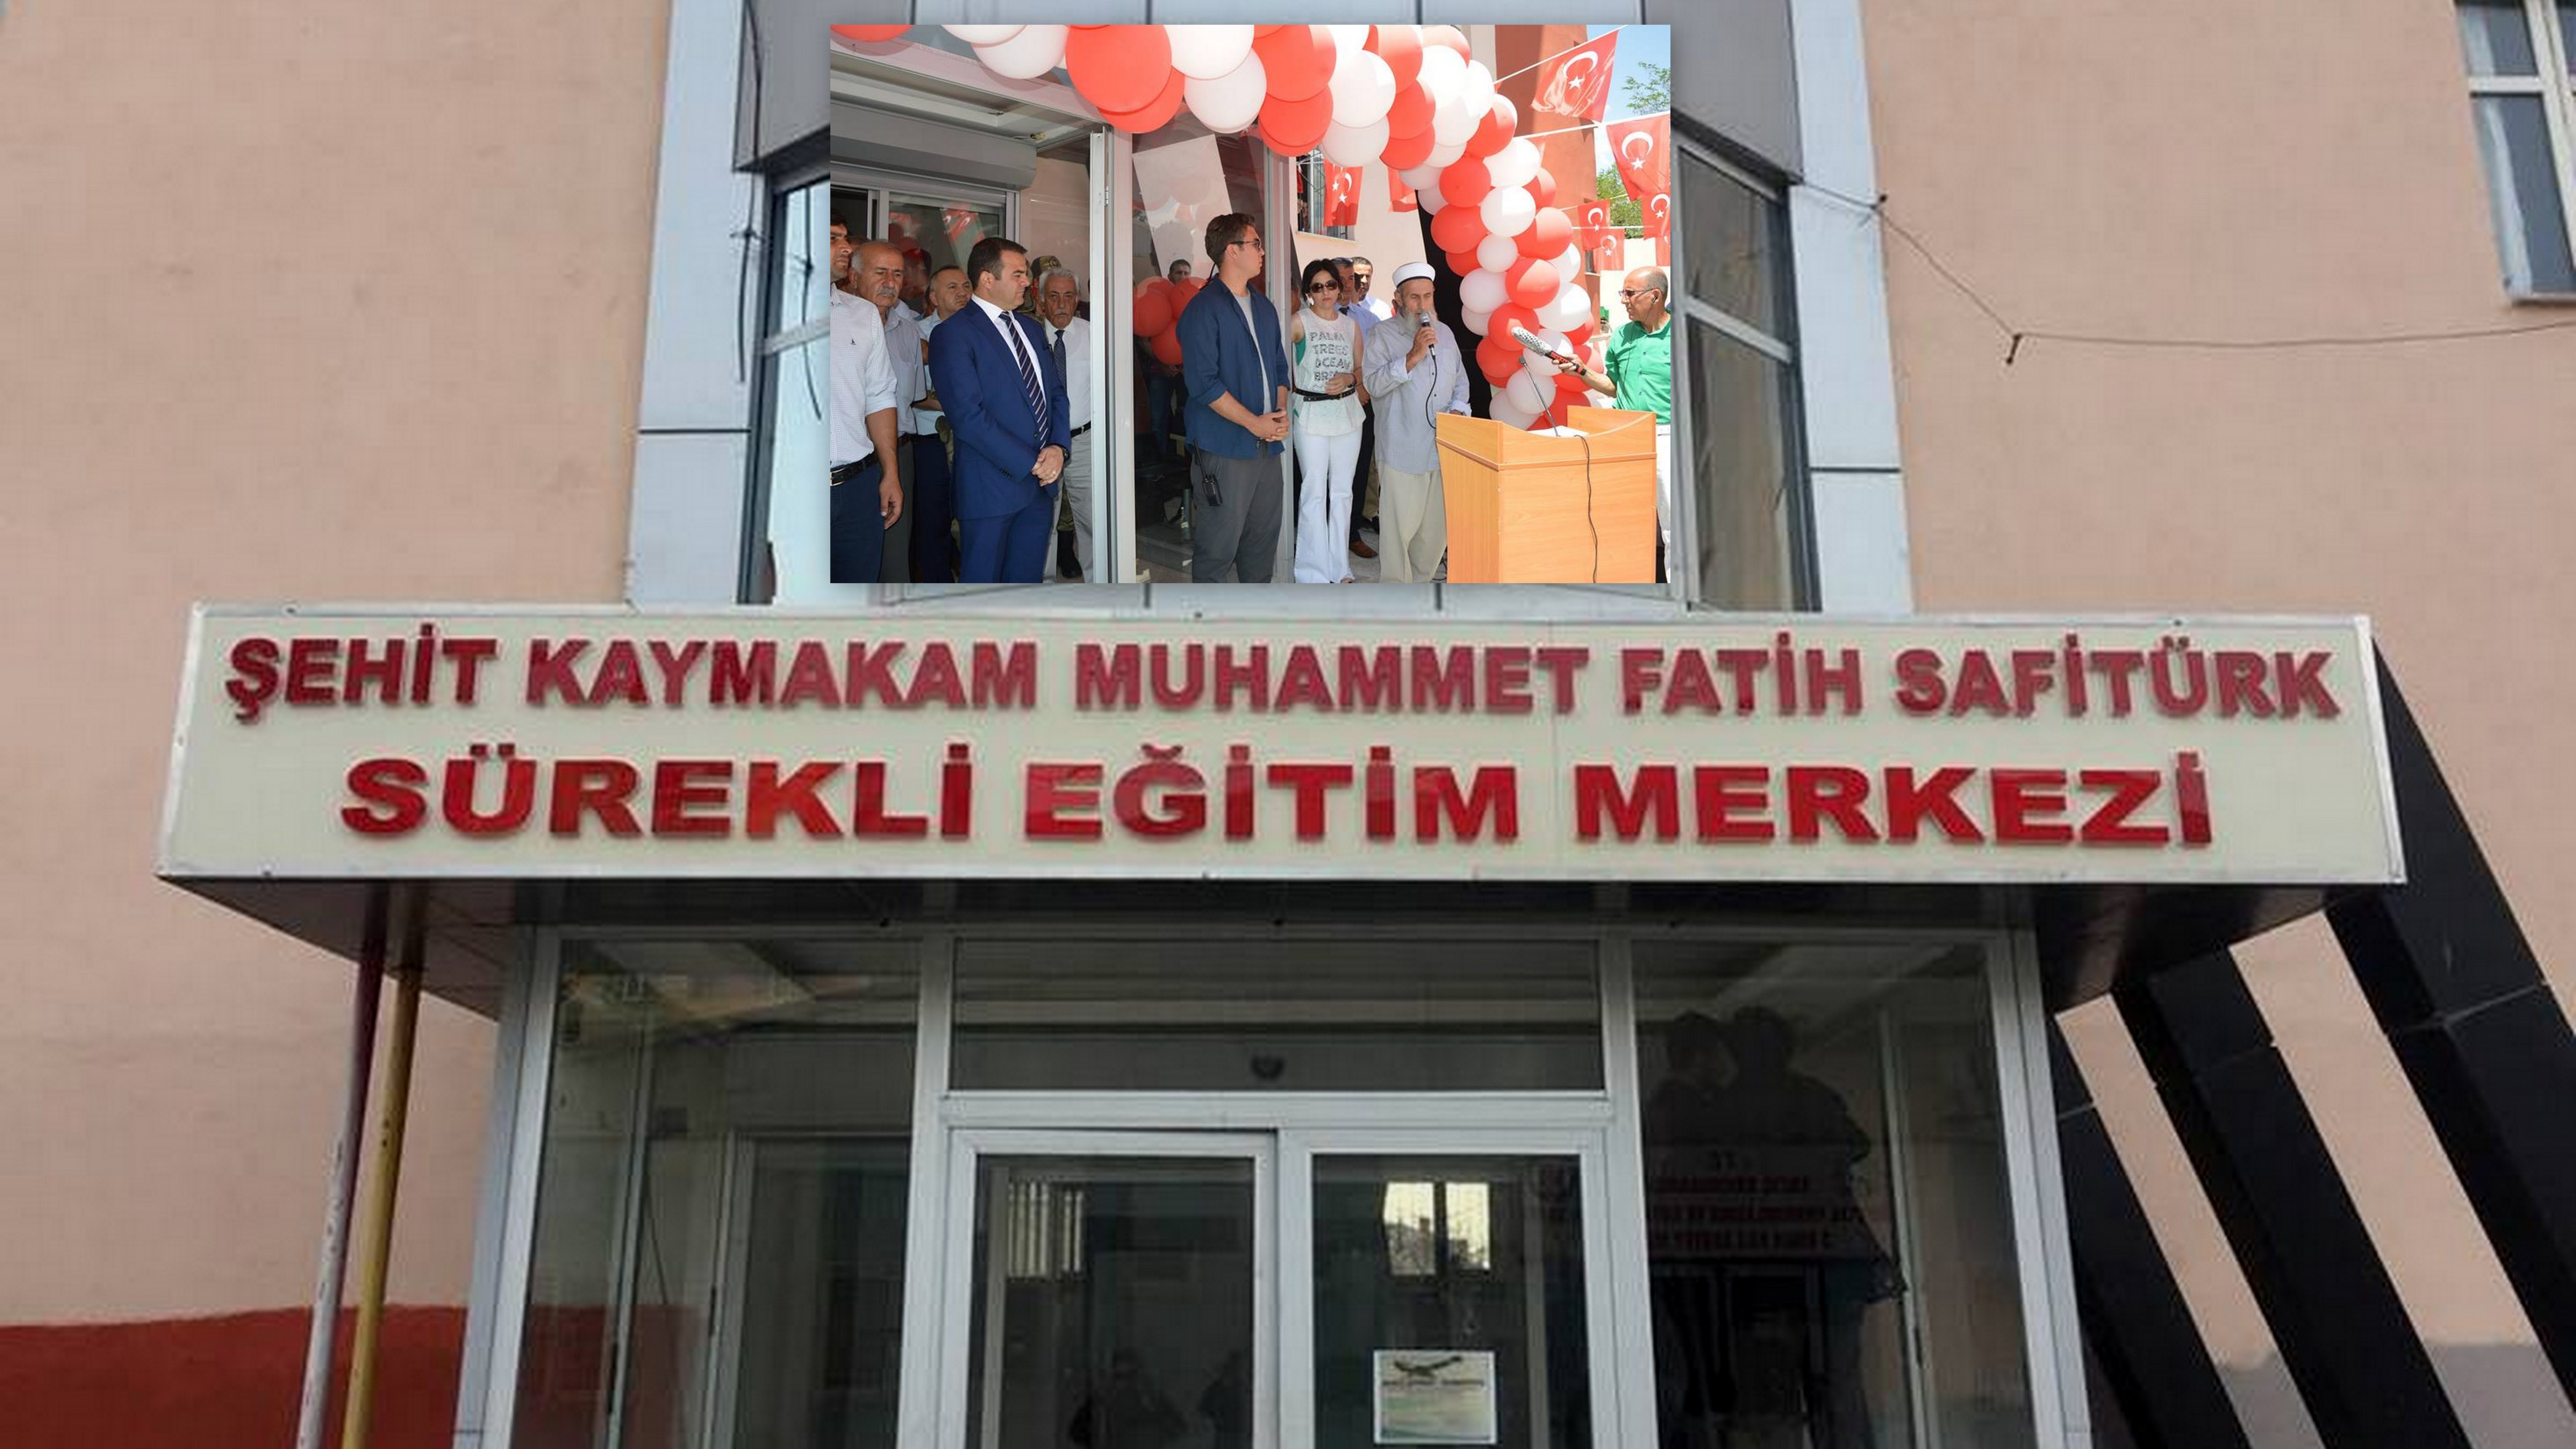 Van-Erciş’te Muhammet Fatih Safitürk Sürekli Egitim Merkezi Açıldı